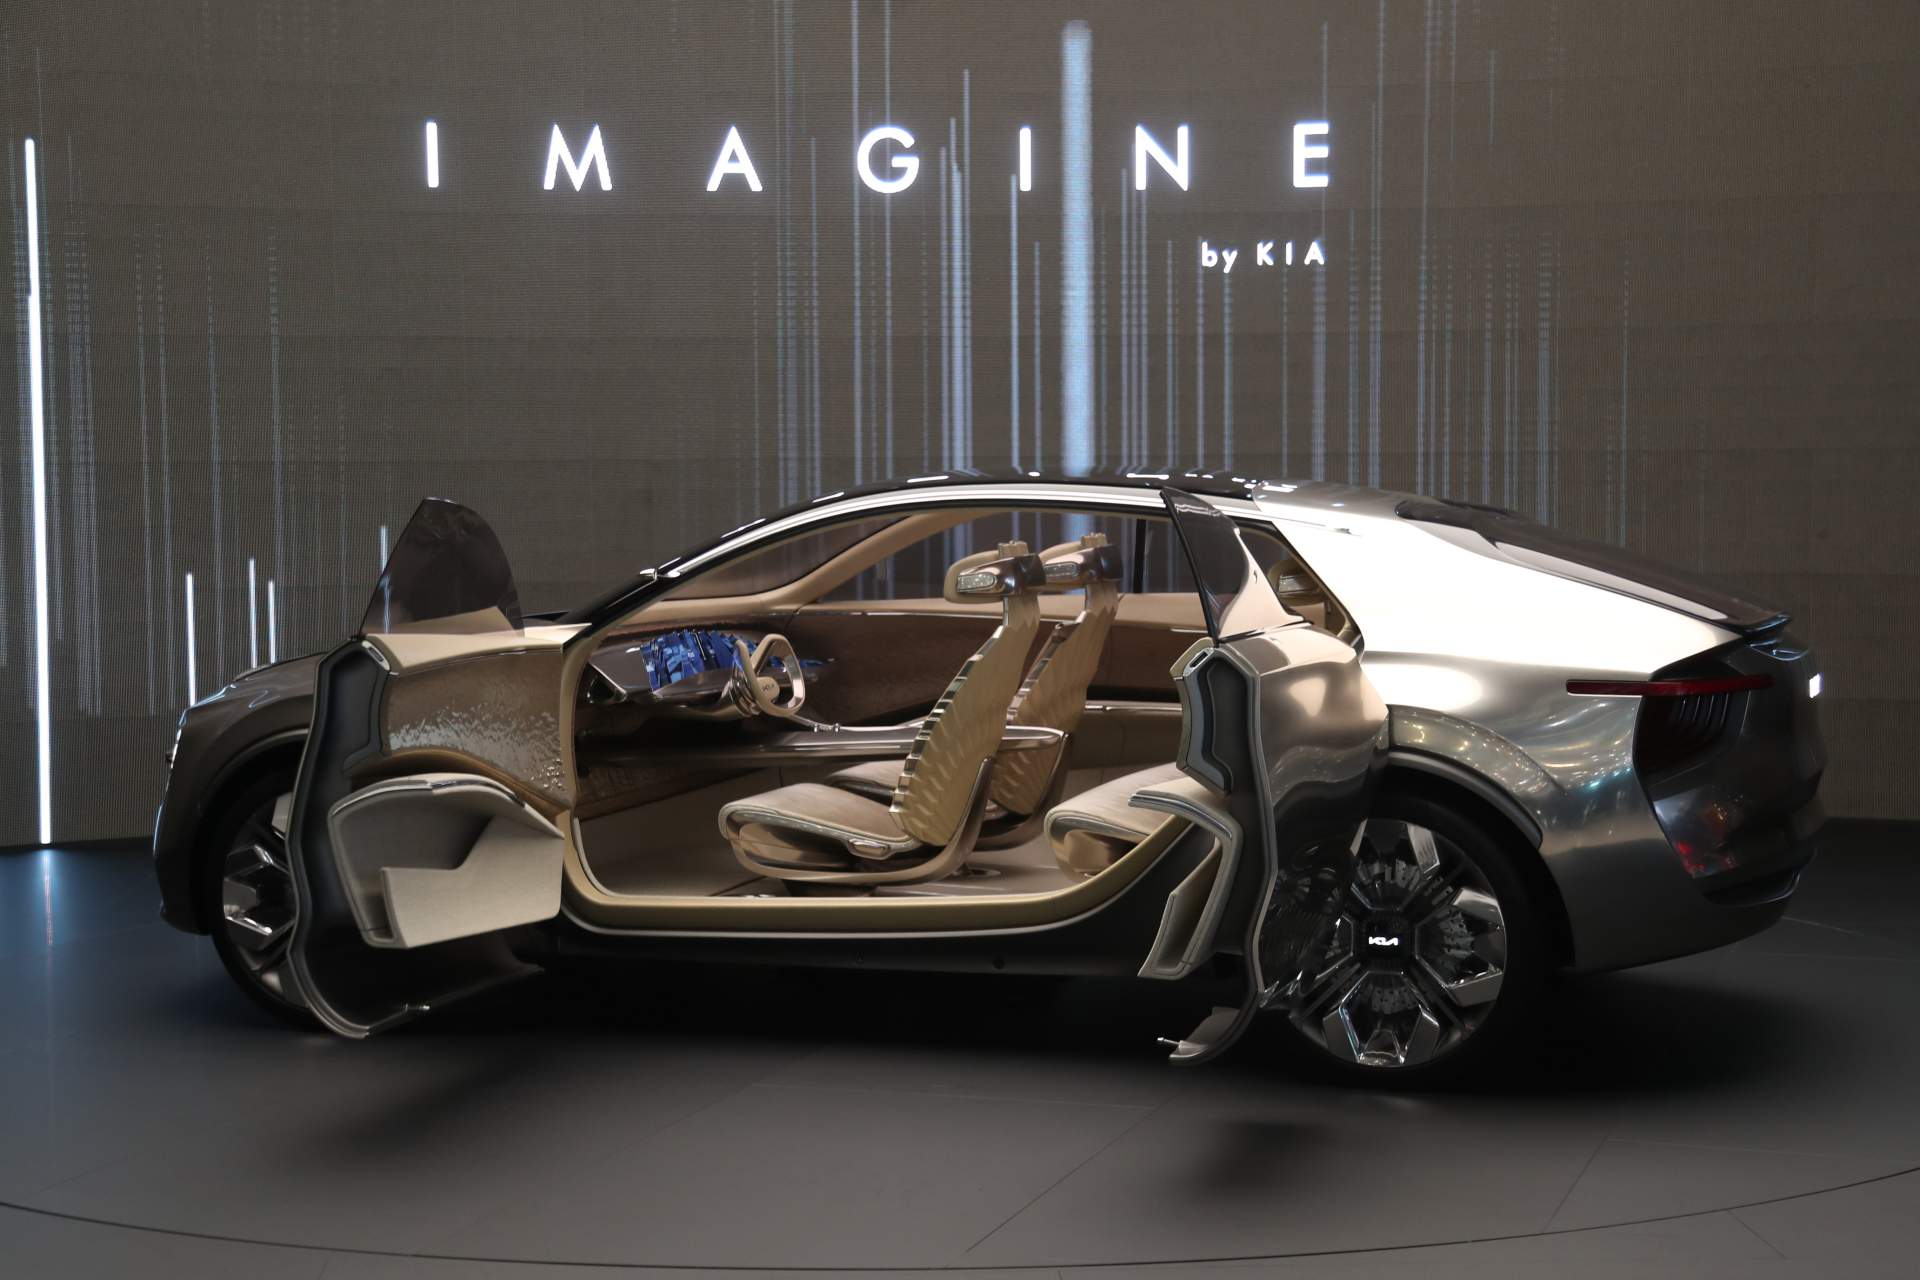 كيا ستطرح نسخة إنتاجية من سيارتها إيماجين بالأسواق 8